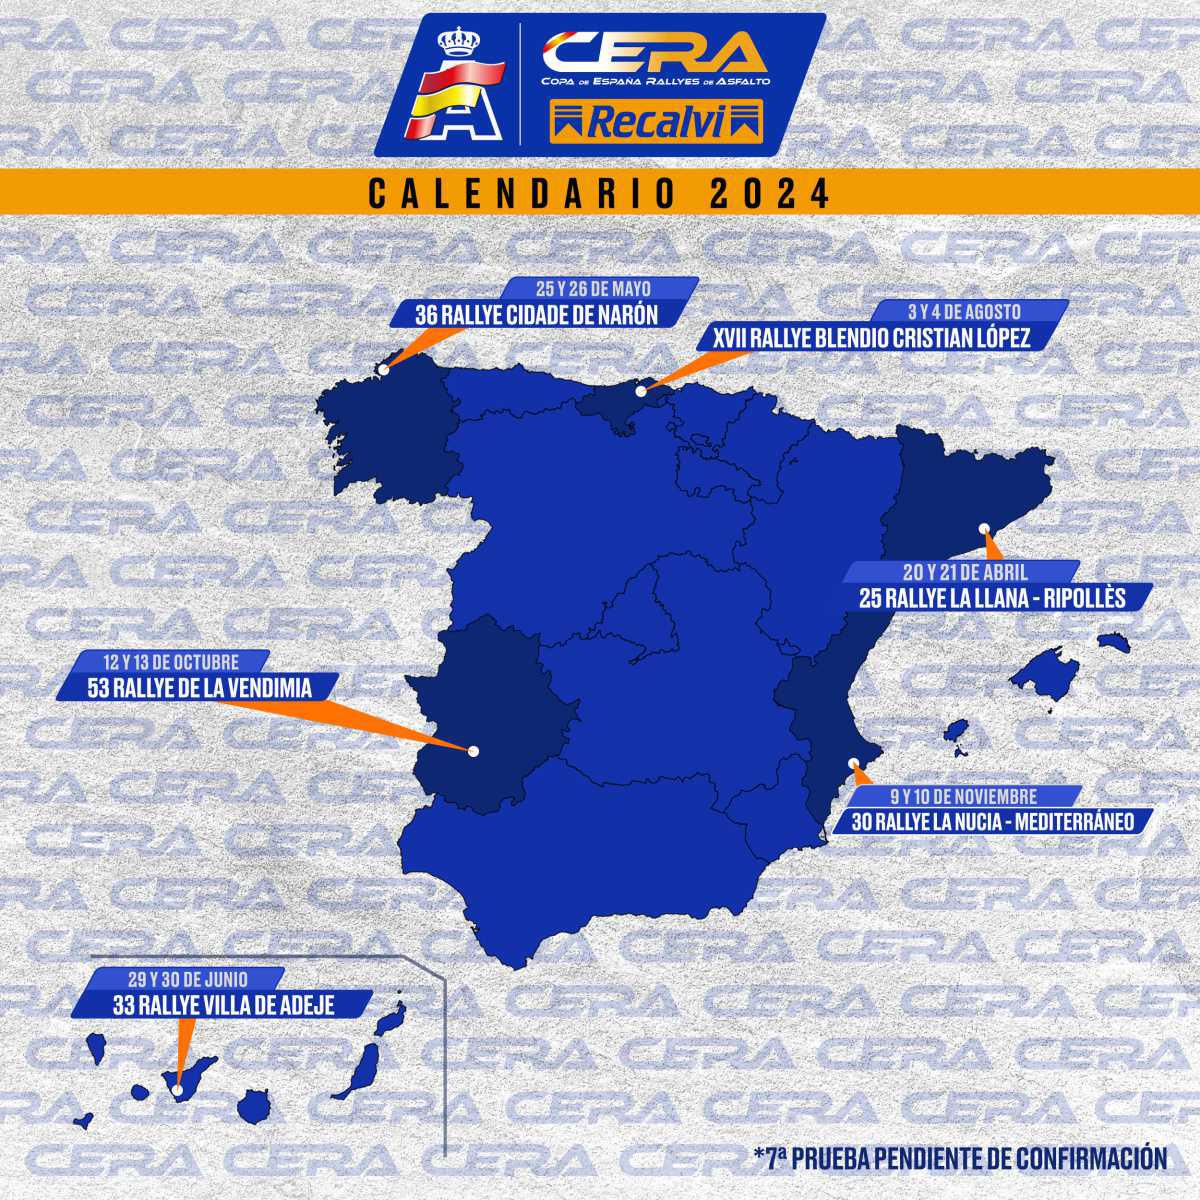 Dos rallyes nuevos en la CERA - Recalvi 2024: La Llana-Ripollès y La Nucía